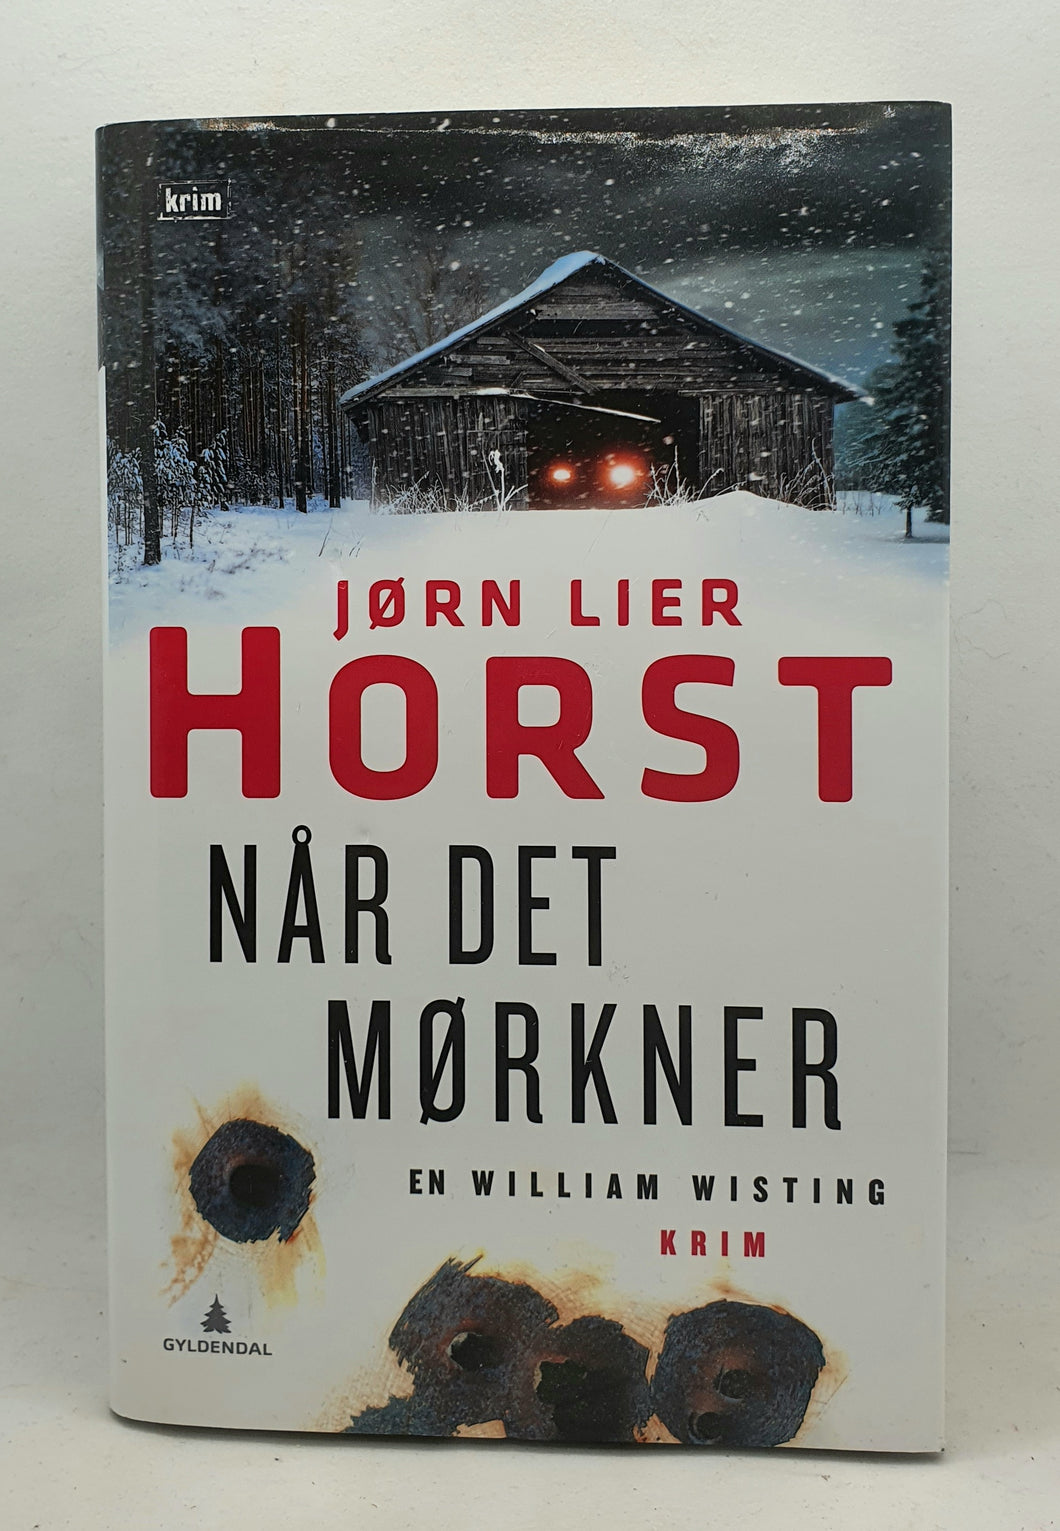 Bok - Når Det Mørkner av Jørn Lier Horst.